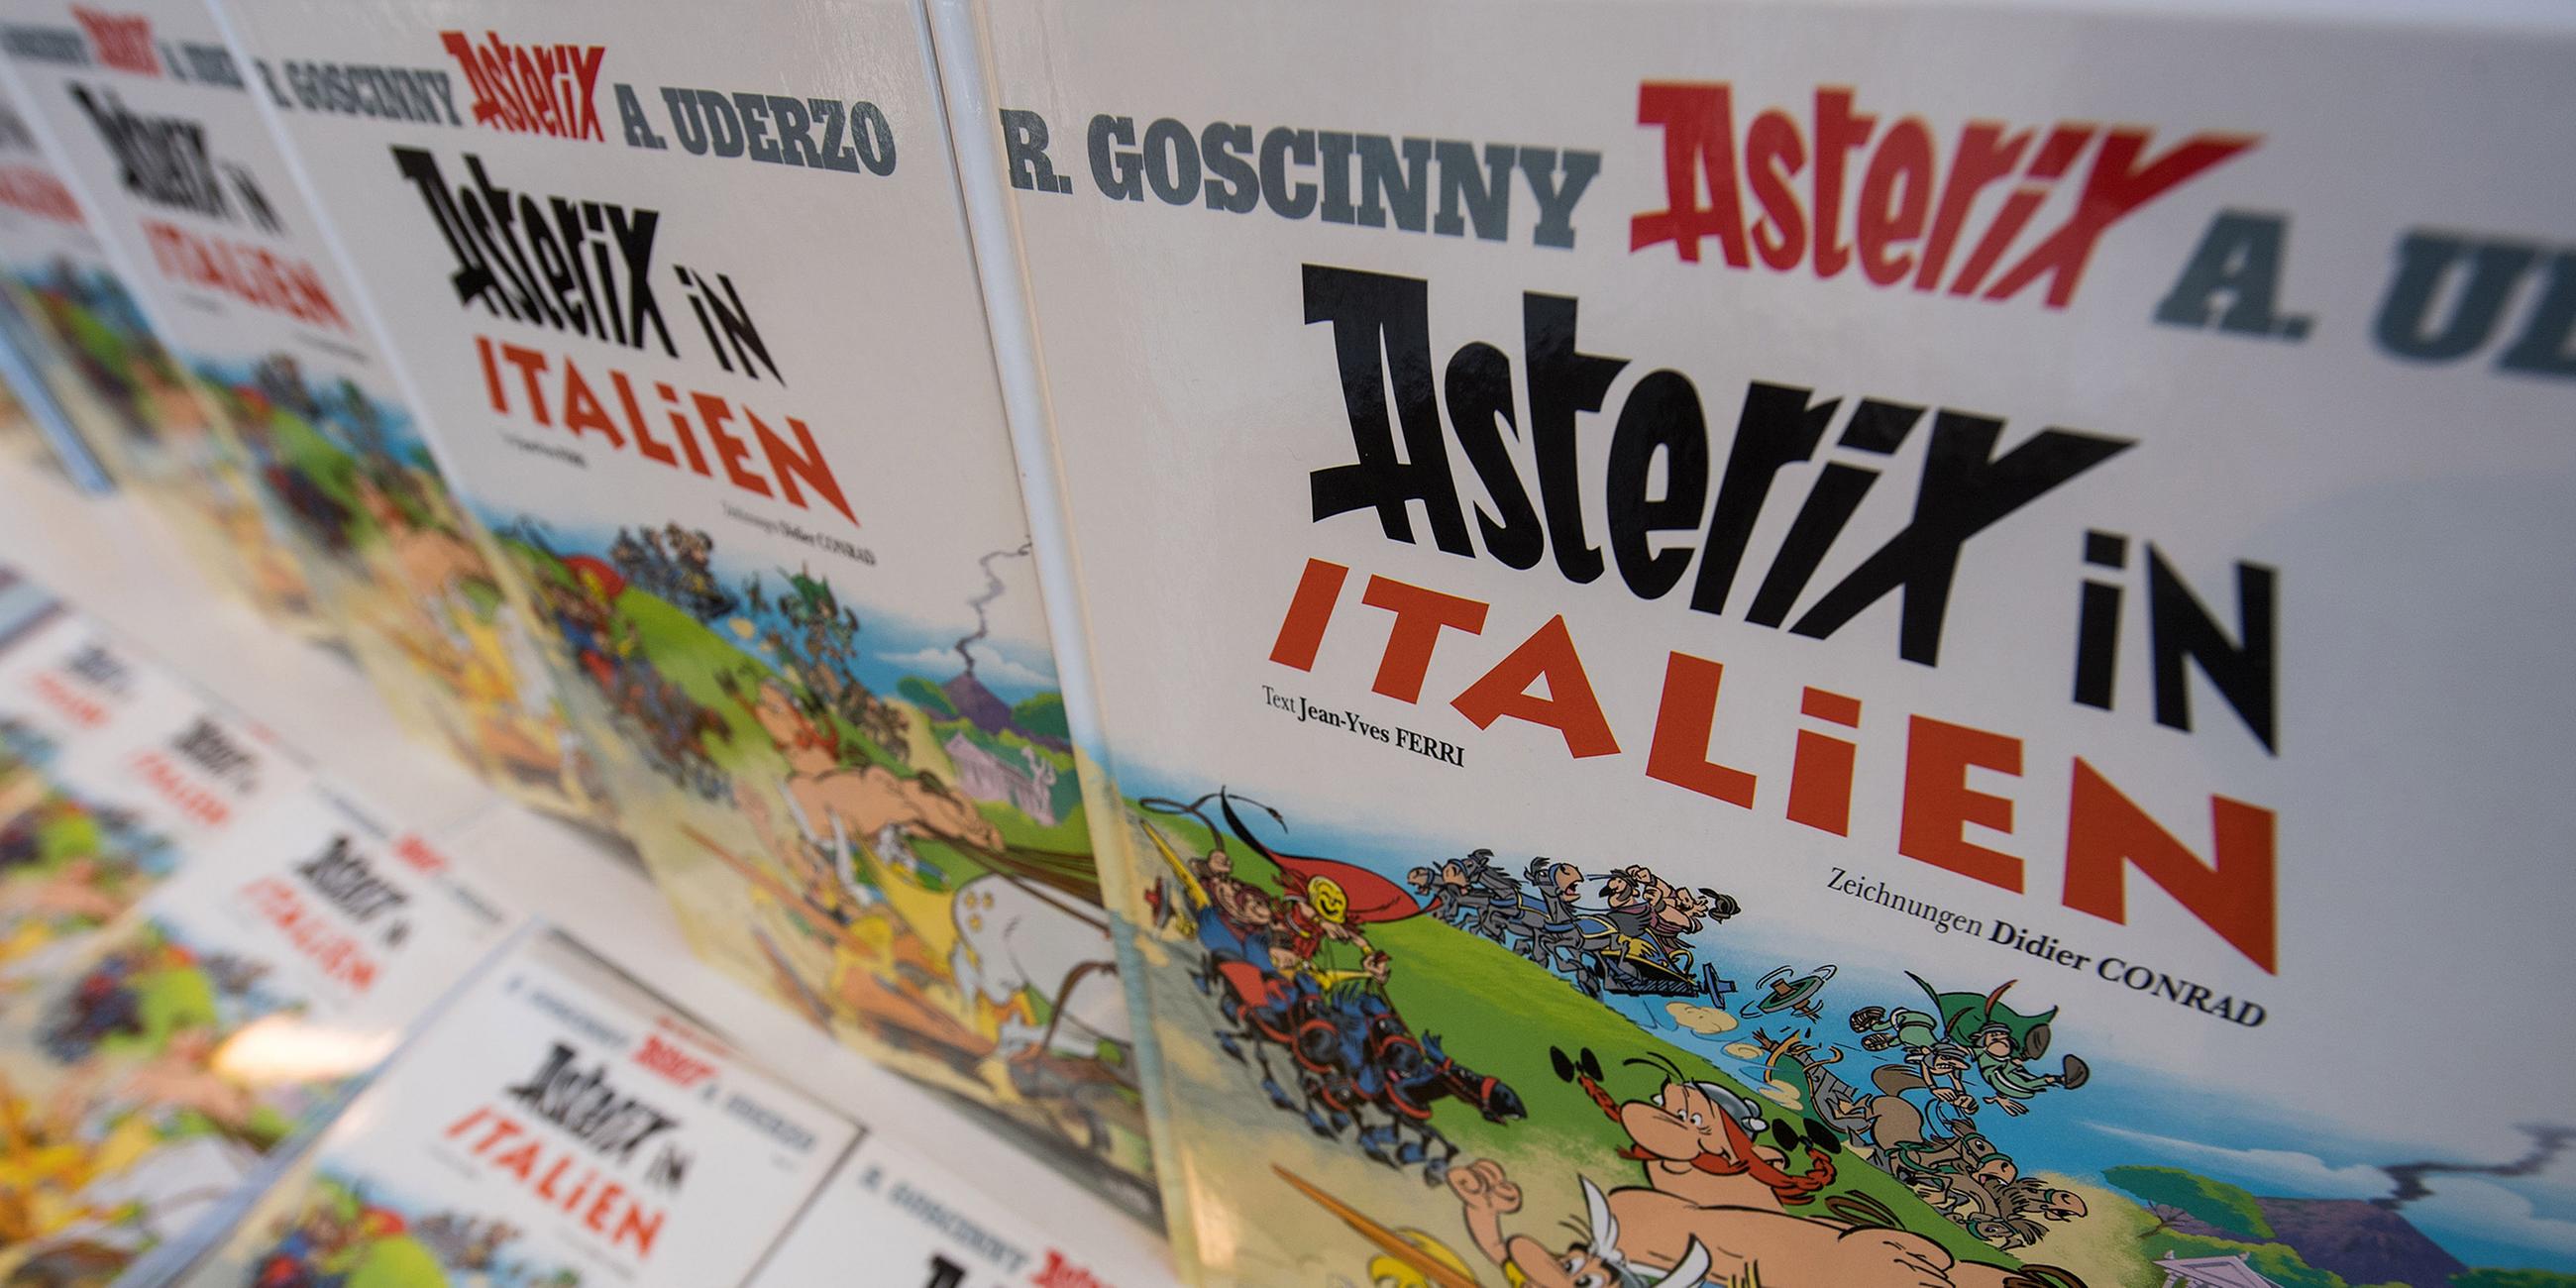 Stuttgart: Der Band "Asterix in IItalien" in einer Buchhandlung.